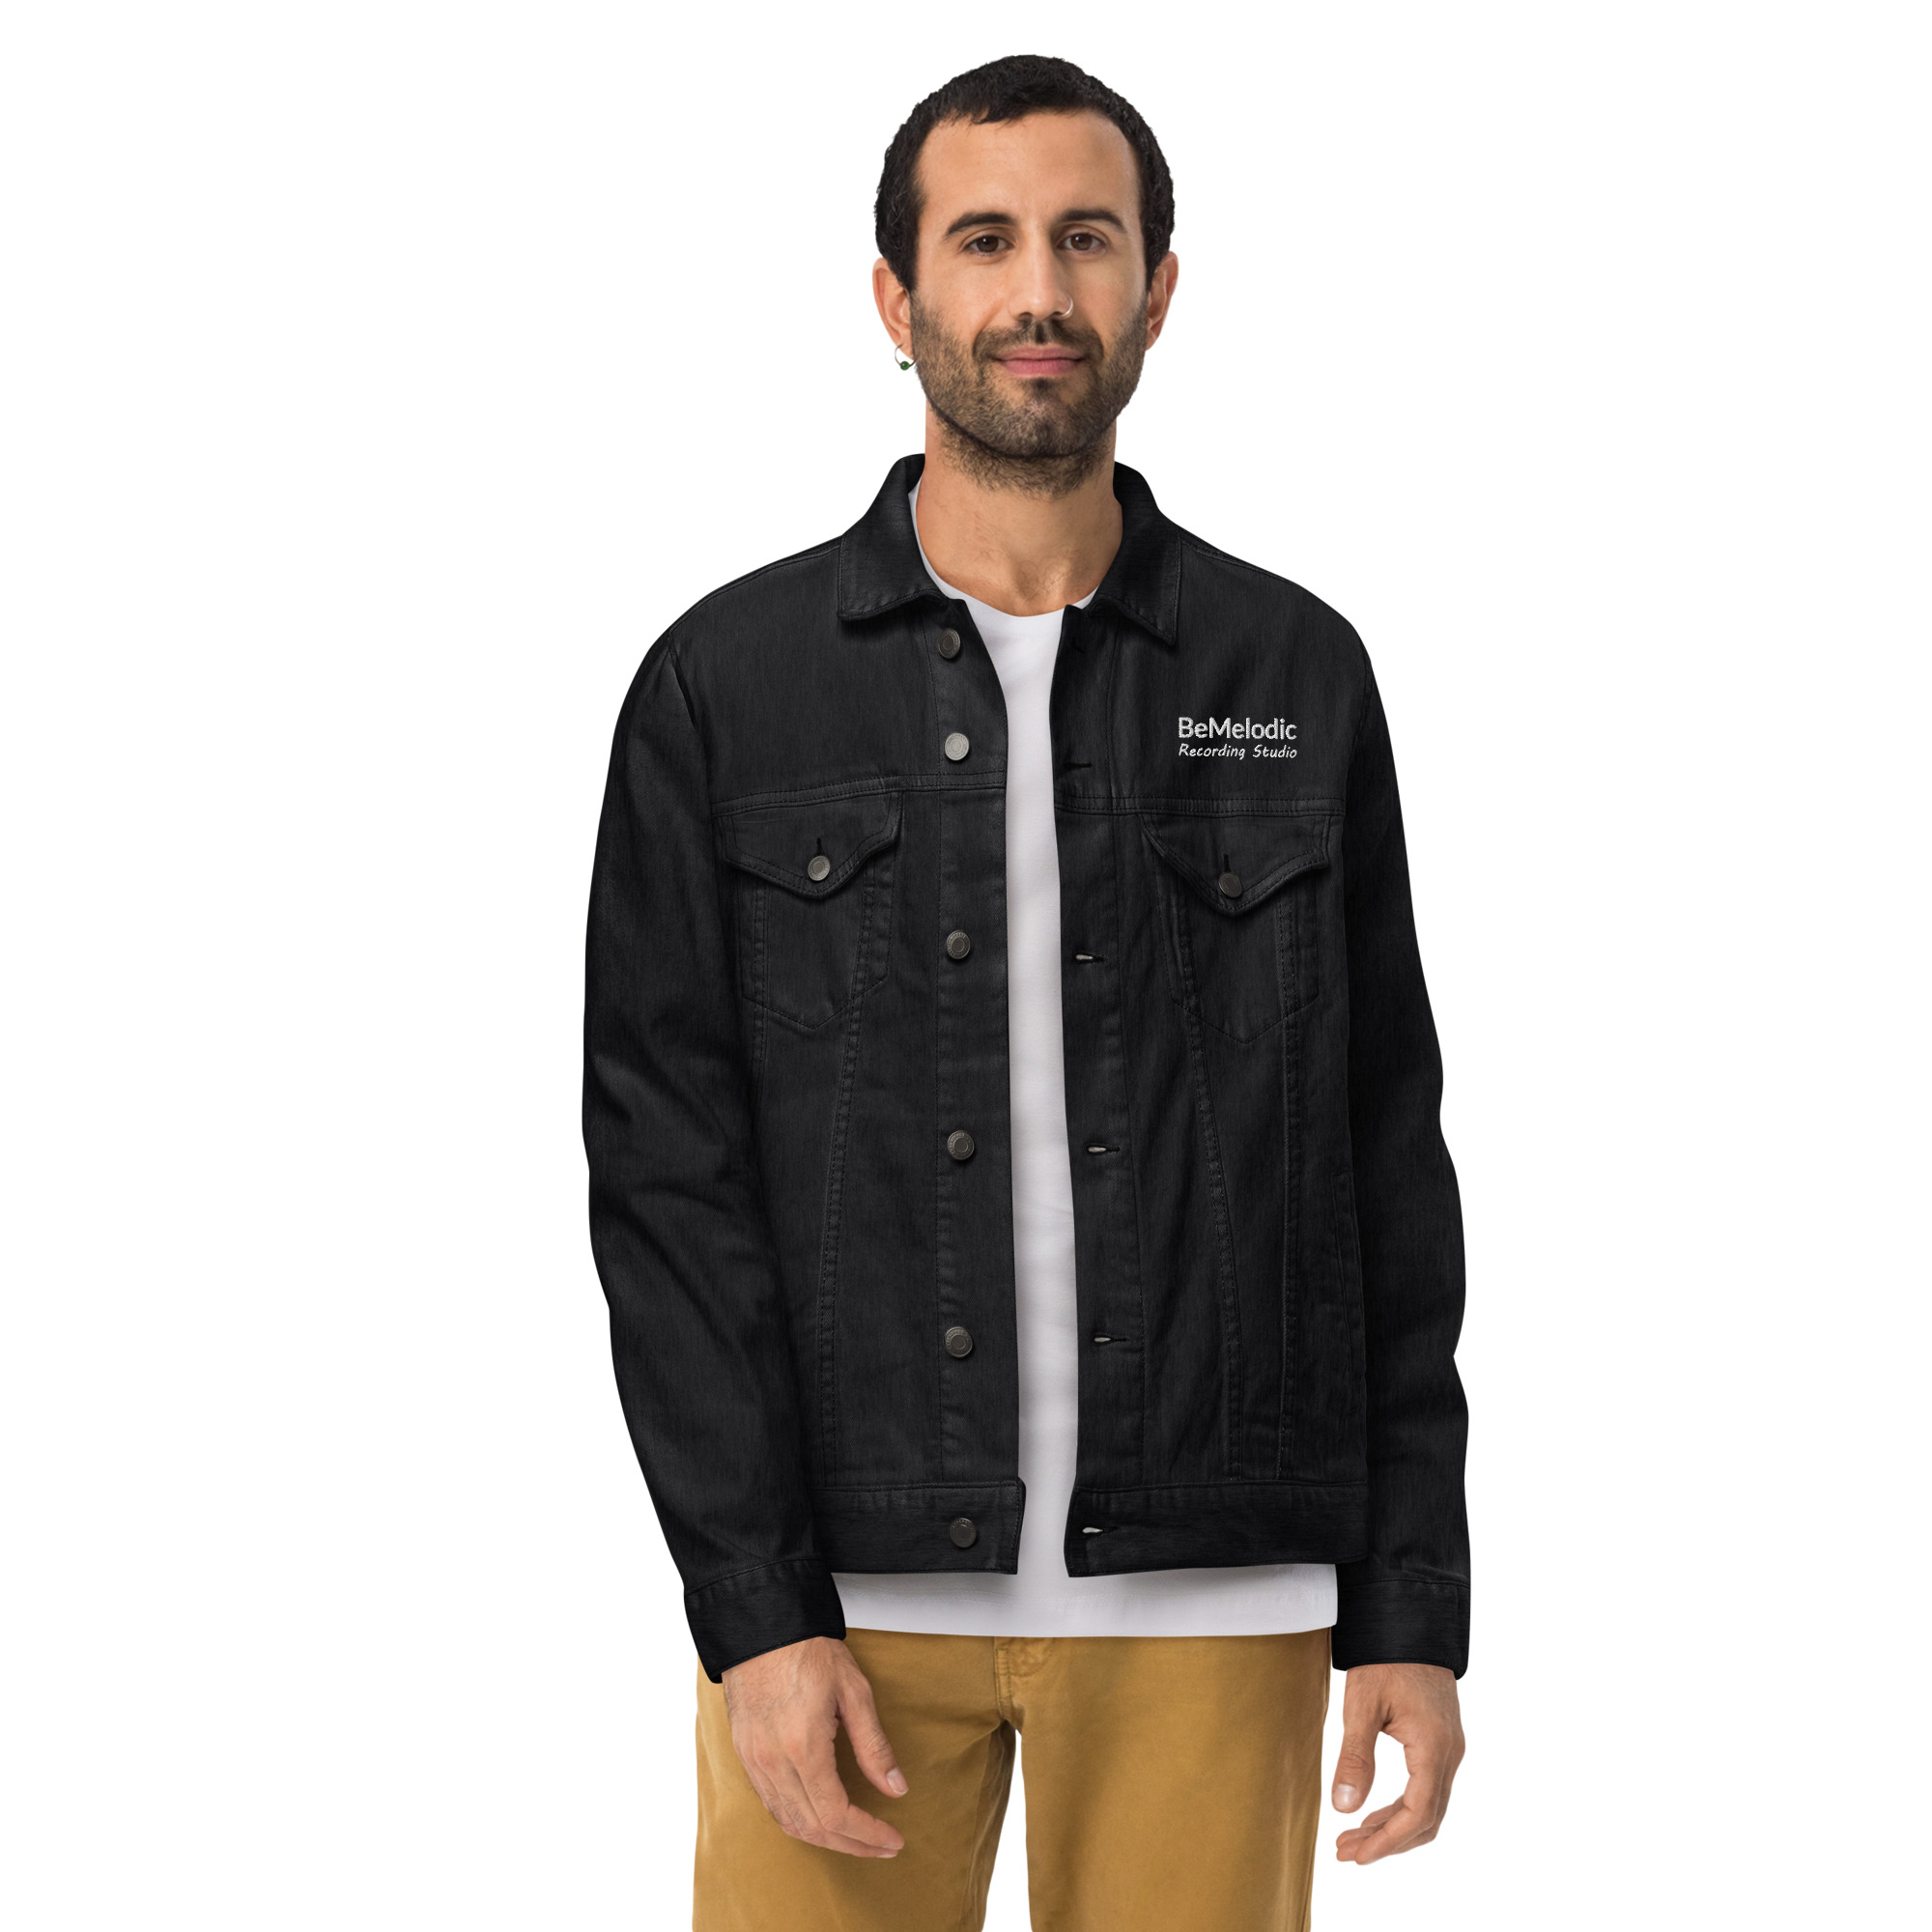 Unisex denim jacket - BeMelodic Swag Shop 8